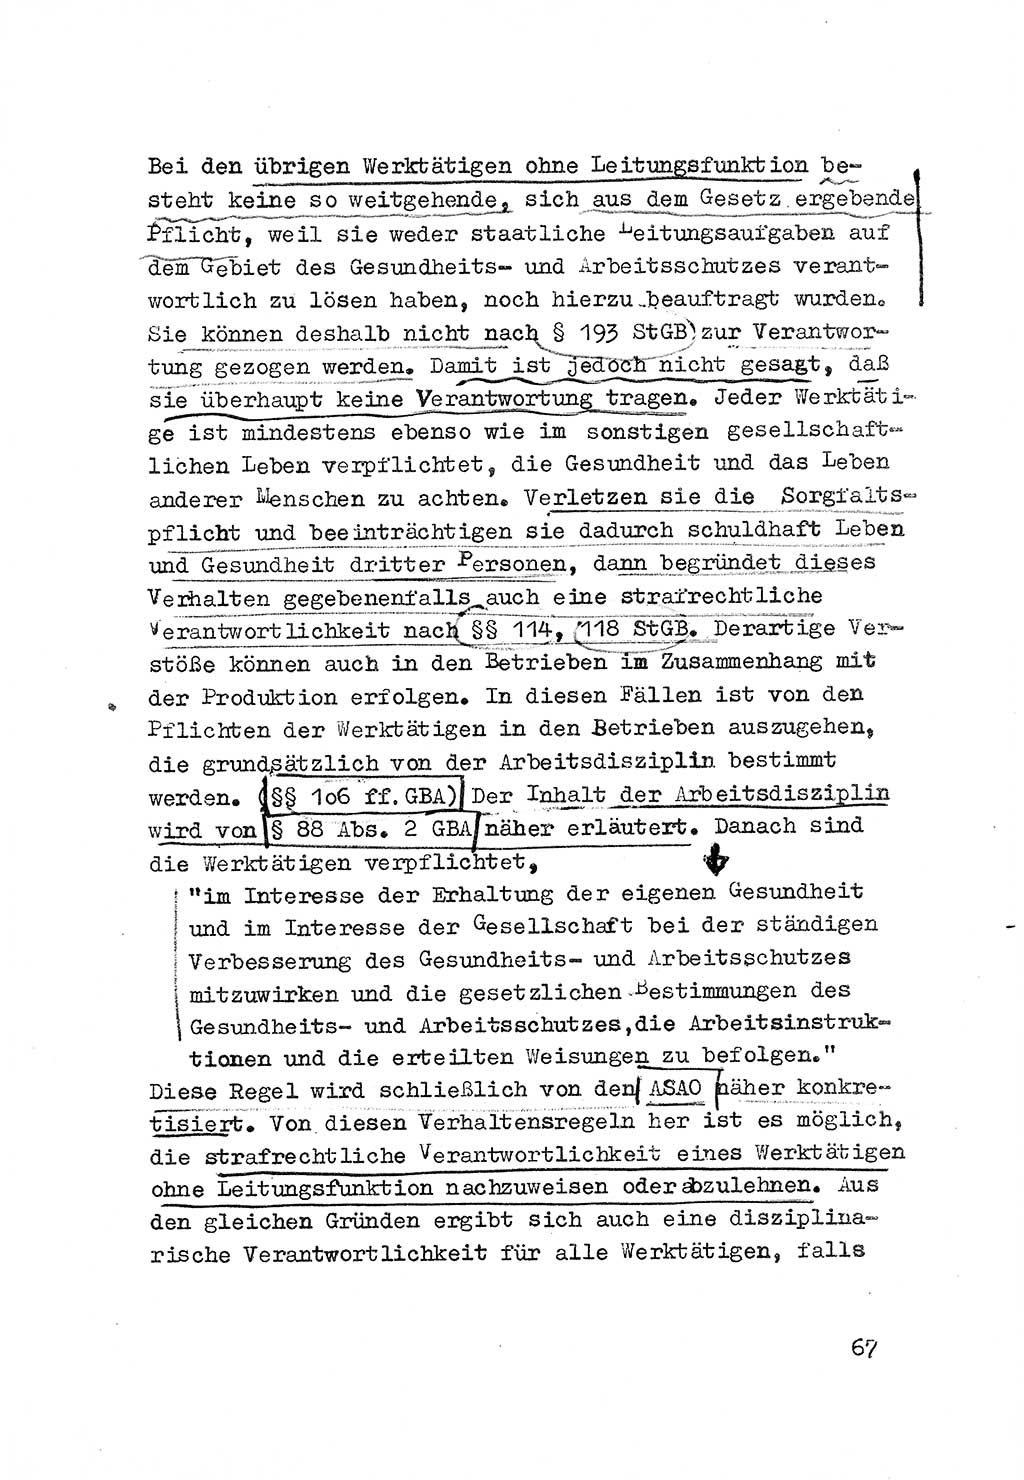 Strafrecht der DDR (Deutsche Demokratische Republik), Besonderer Teil, Lehrmaterial, Heft 3 1969, Seite 67 (Strafr. DDR BT Lehrmat. H. 3 1969, S. 67)